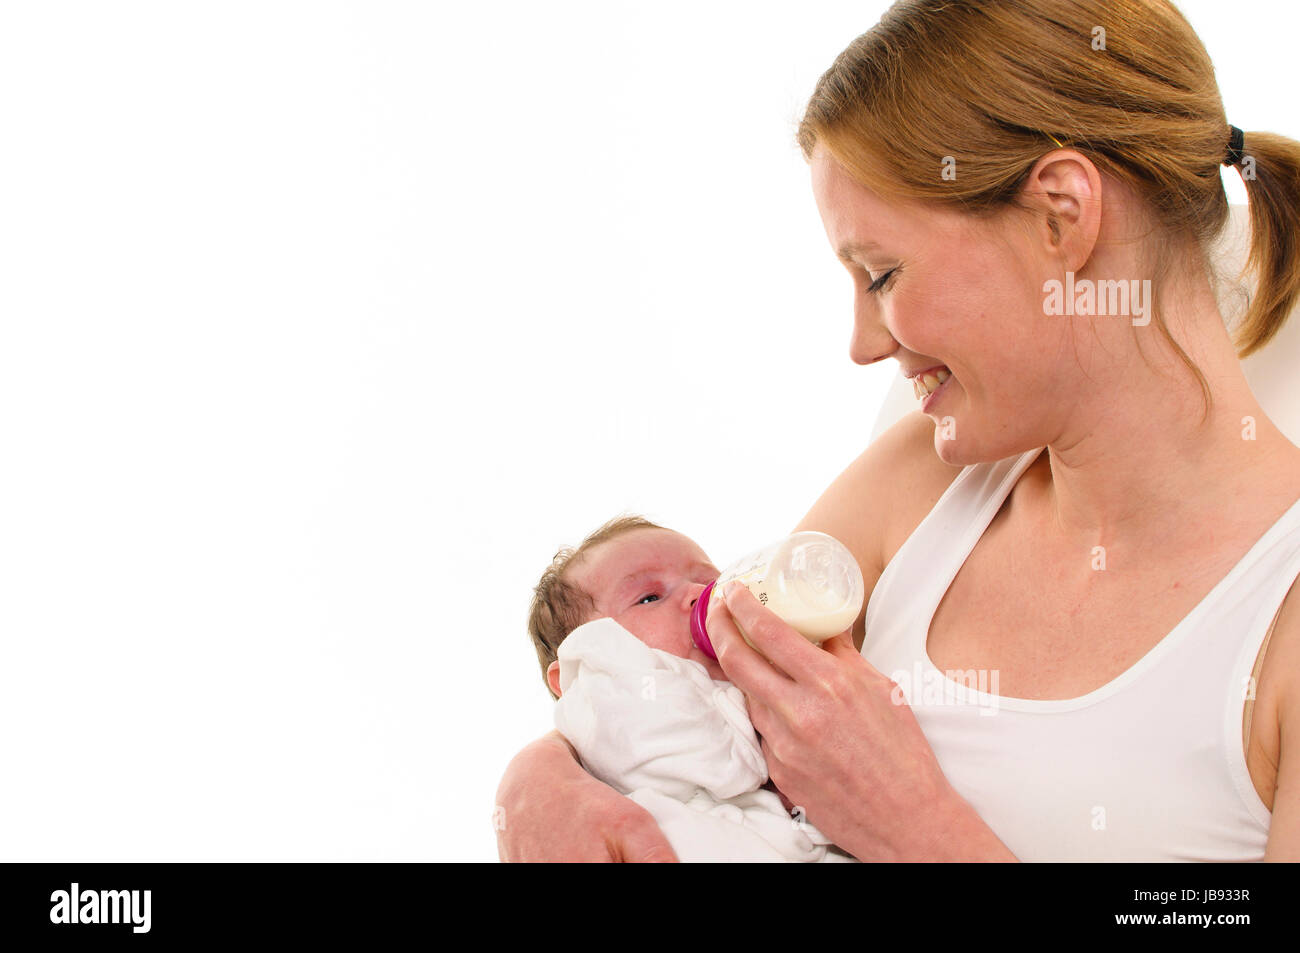 Erwachsene Eine Frau mit weißem Shirt hält einen gekleideten Säugling les weiß auf und zärtlich bras gibt ihm sein Fläschchen, freigestellt Hintergrund weißem vor. Banque D'Images